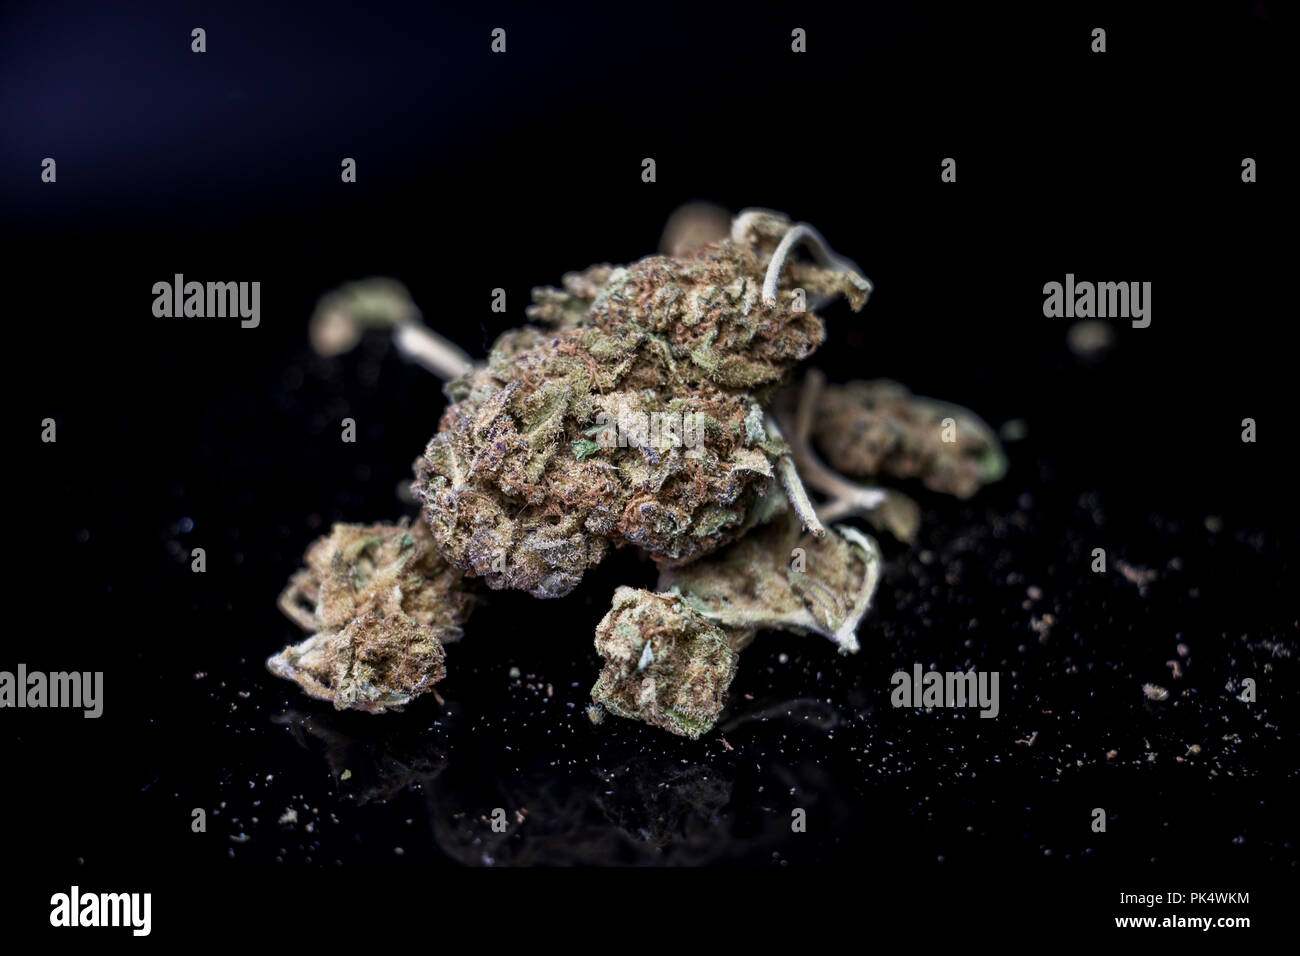 Stapel von Unkraut auf einem Tisch. Marihuana Bud. Illegale Betäubungsmittel. Kalifornien Unkraut. Stockfoto